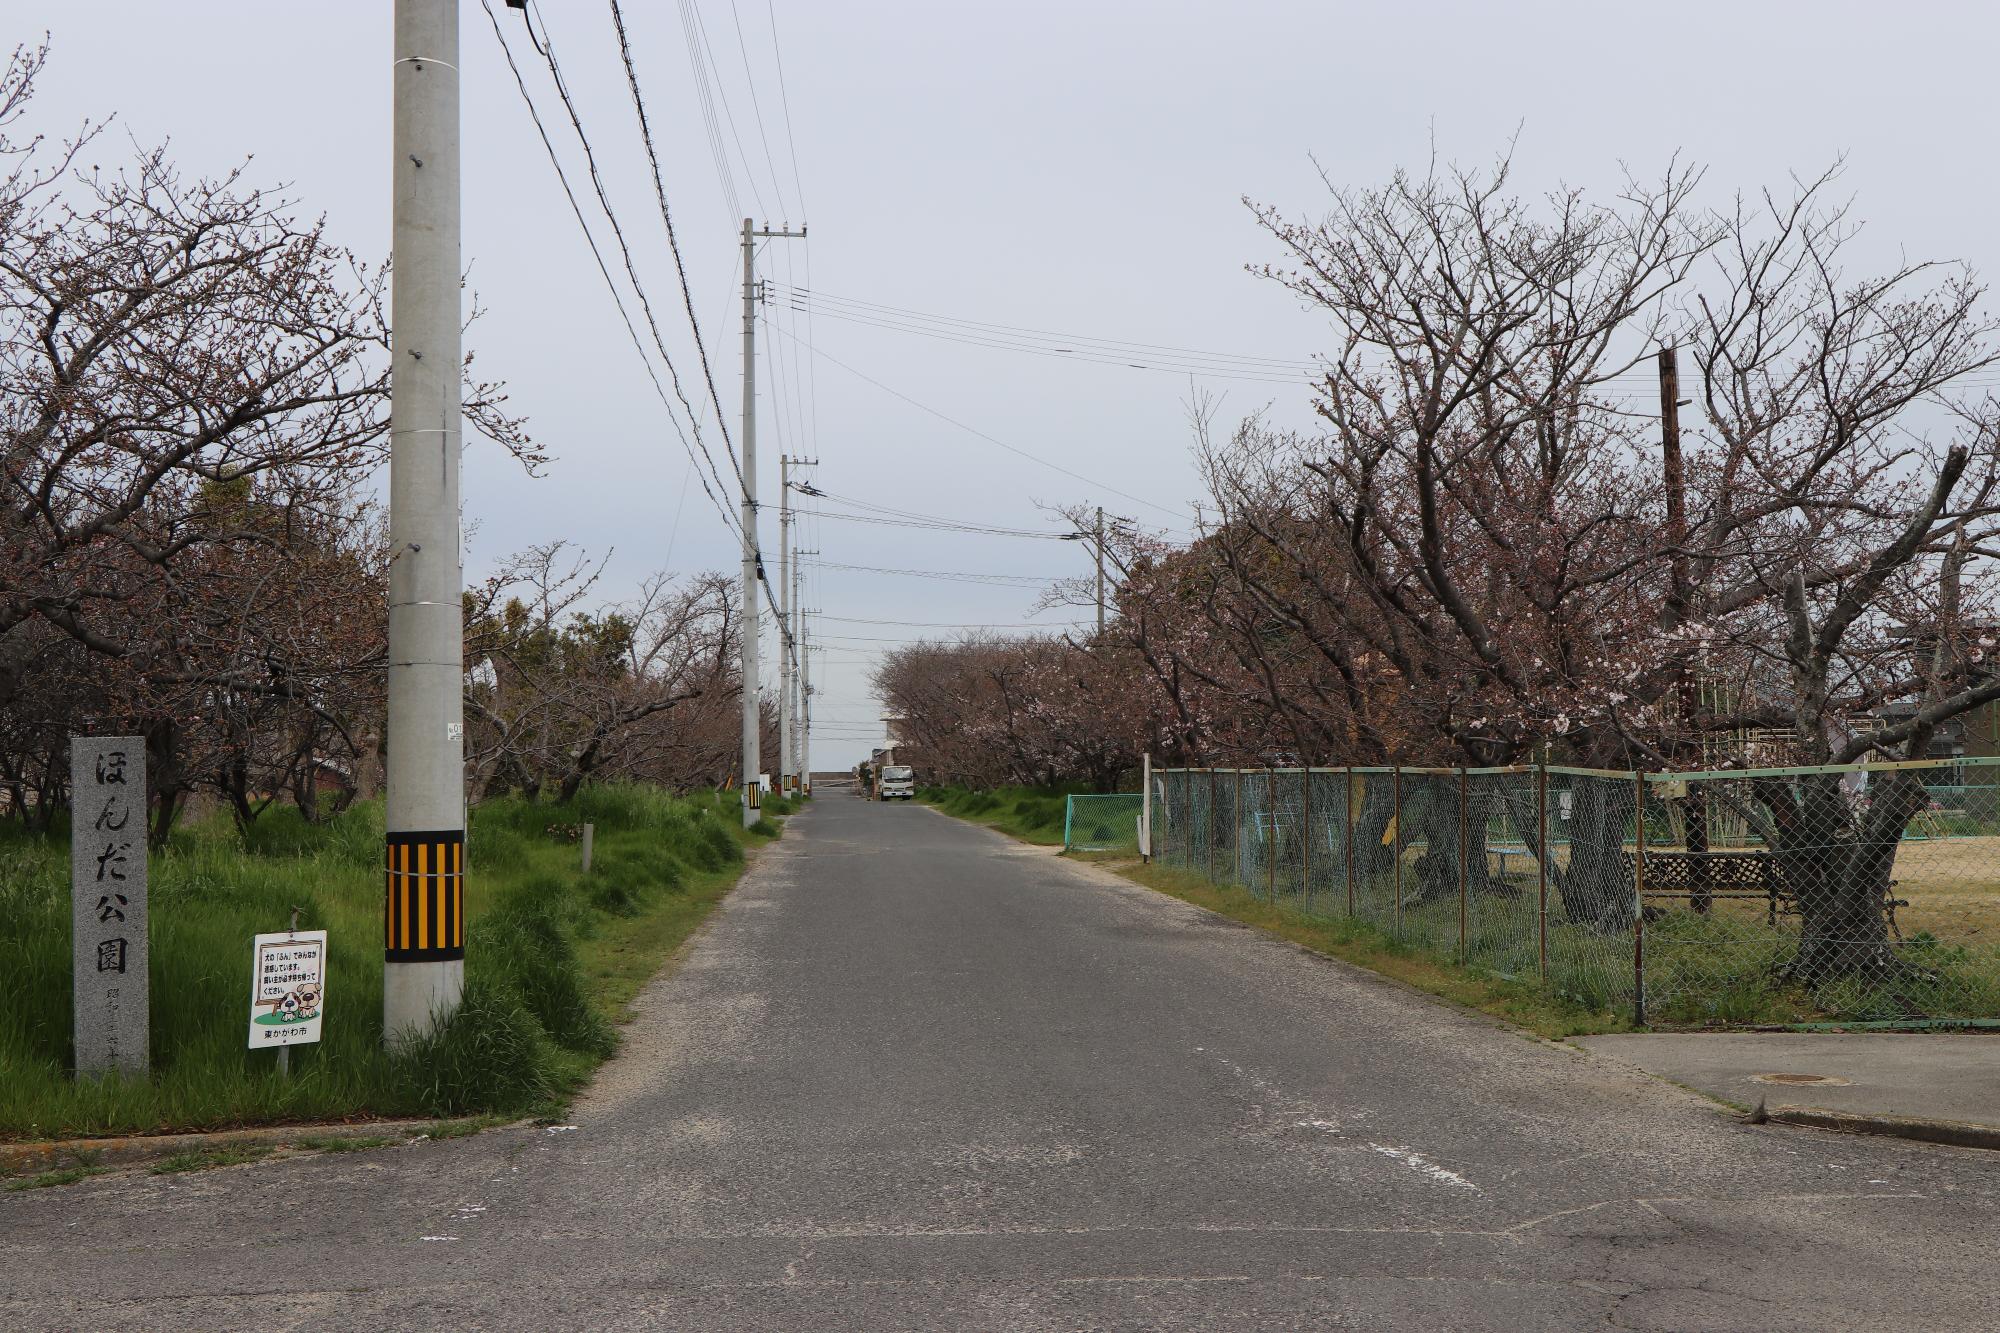 ほんだ公園への道路沿いにある桜並木の写真